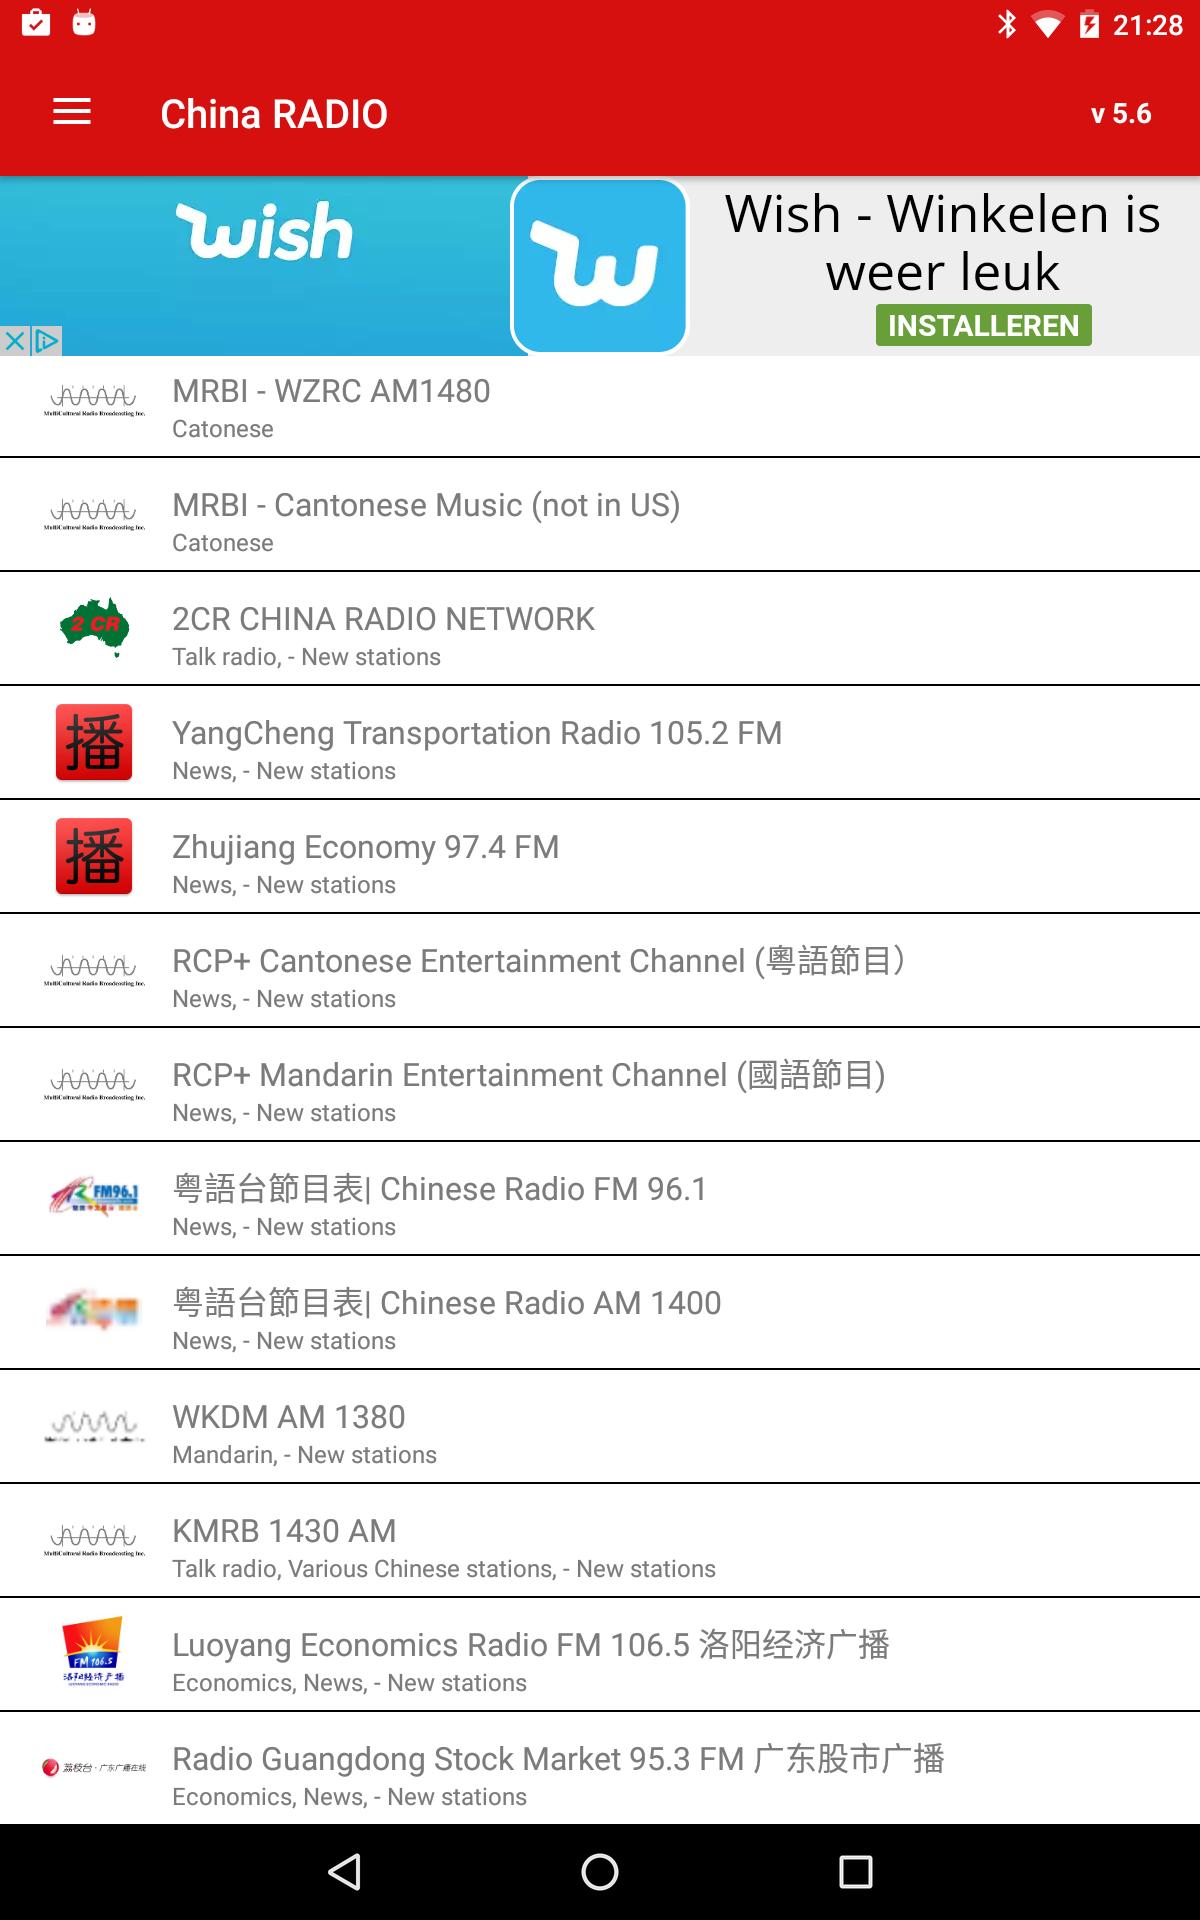 广播中国(China RADIO) Listen live for Android - APK Download